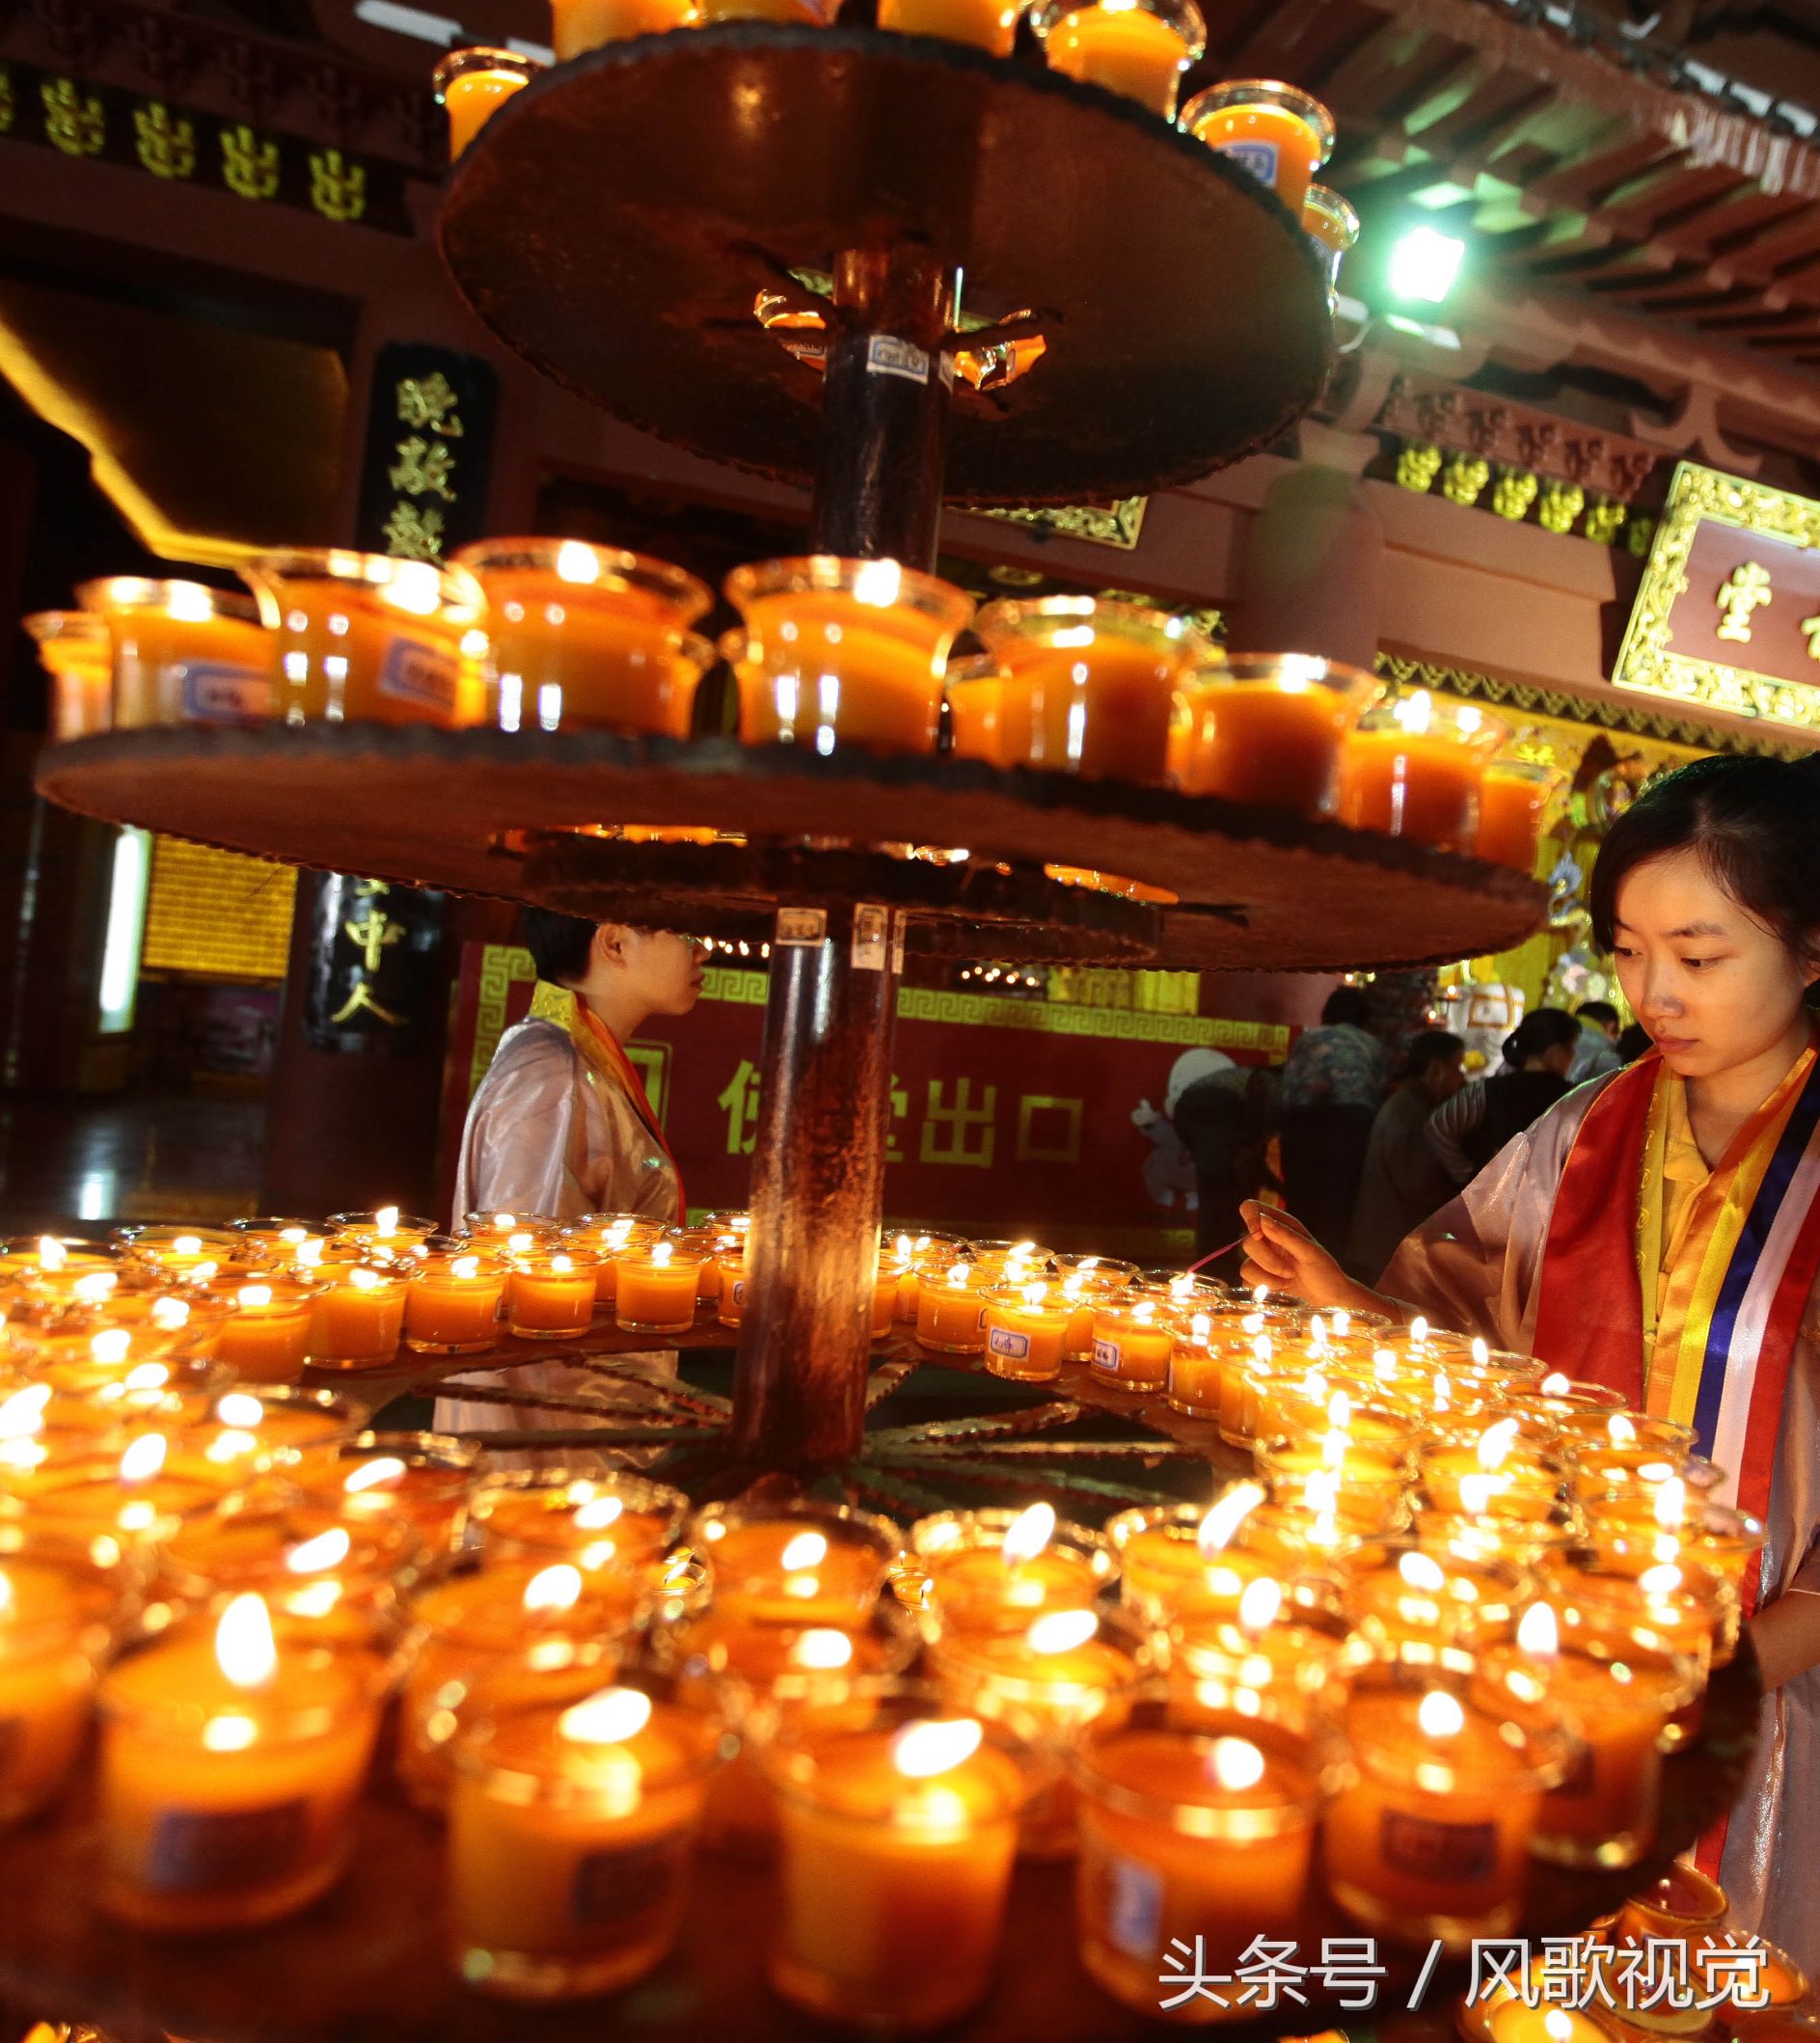 佛寺道场传灯法会万灯祈福传灯到底有何意义和功德呢